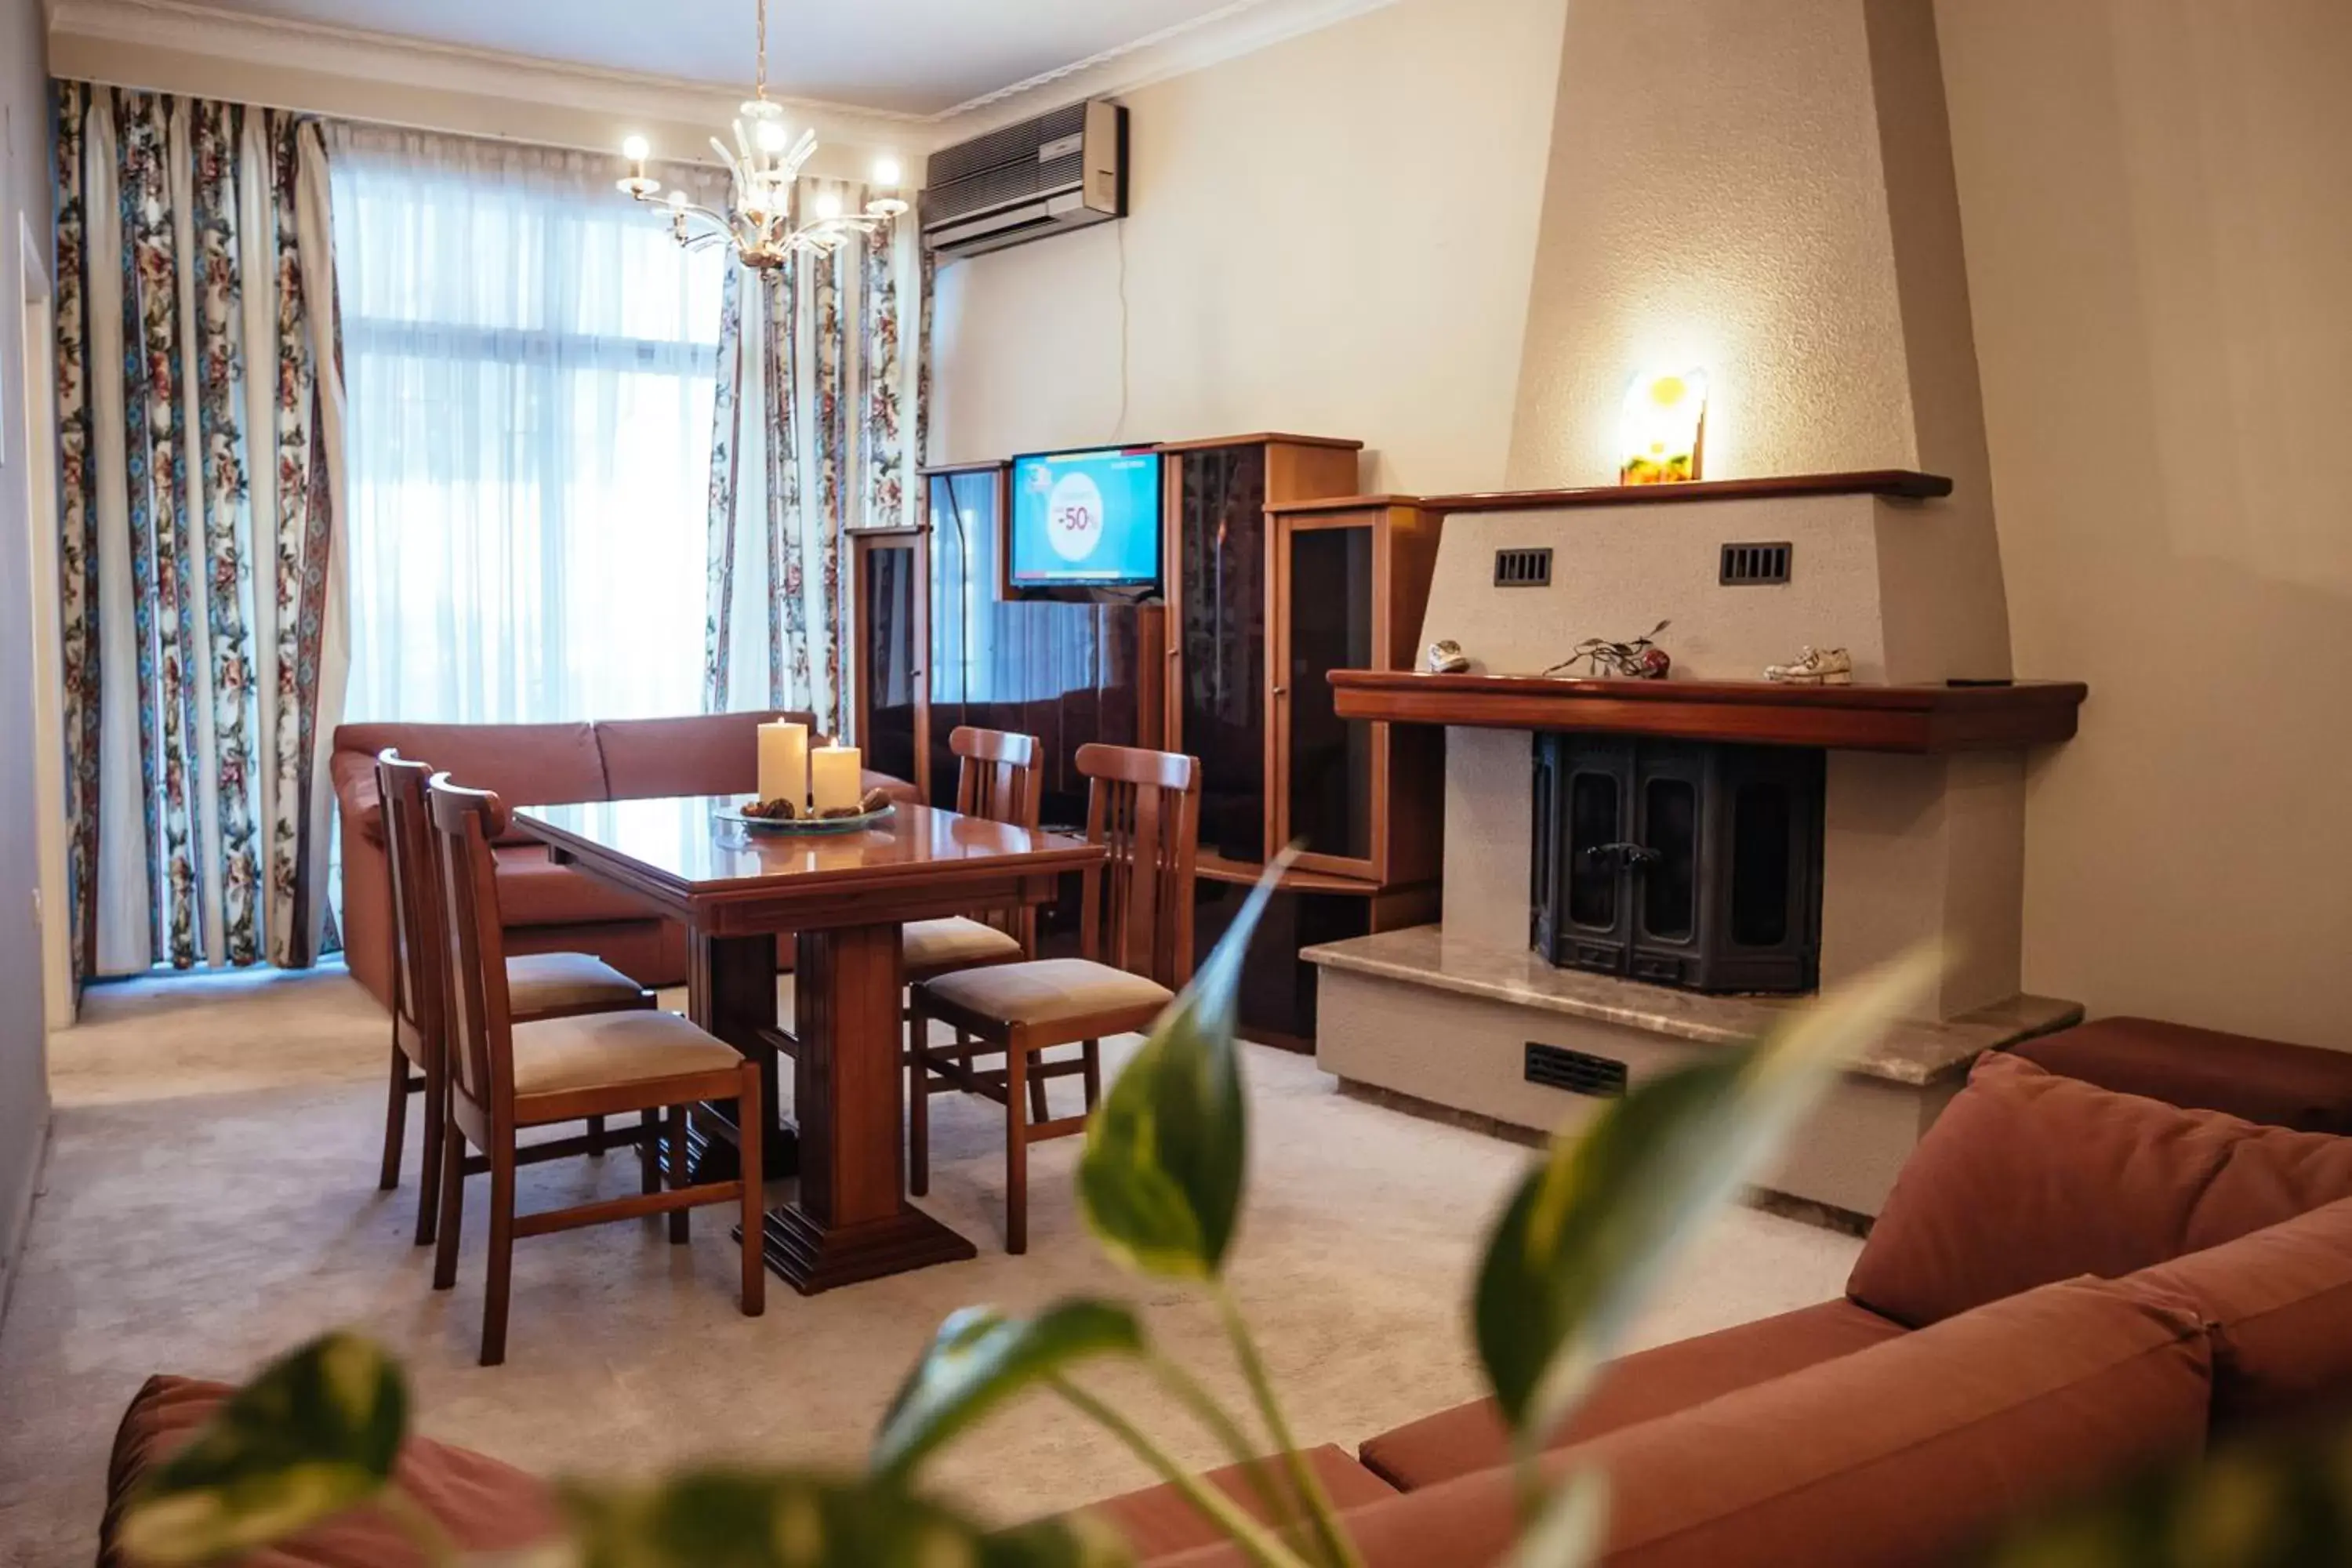 Living room, Dining Area in Ignatia Hotel